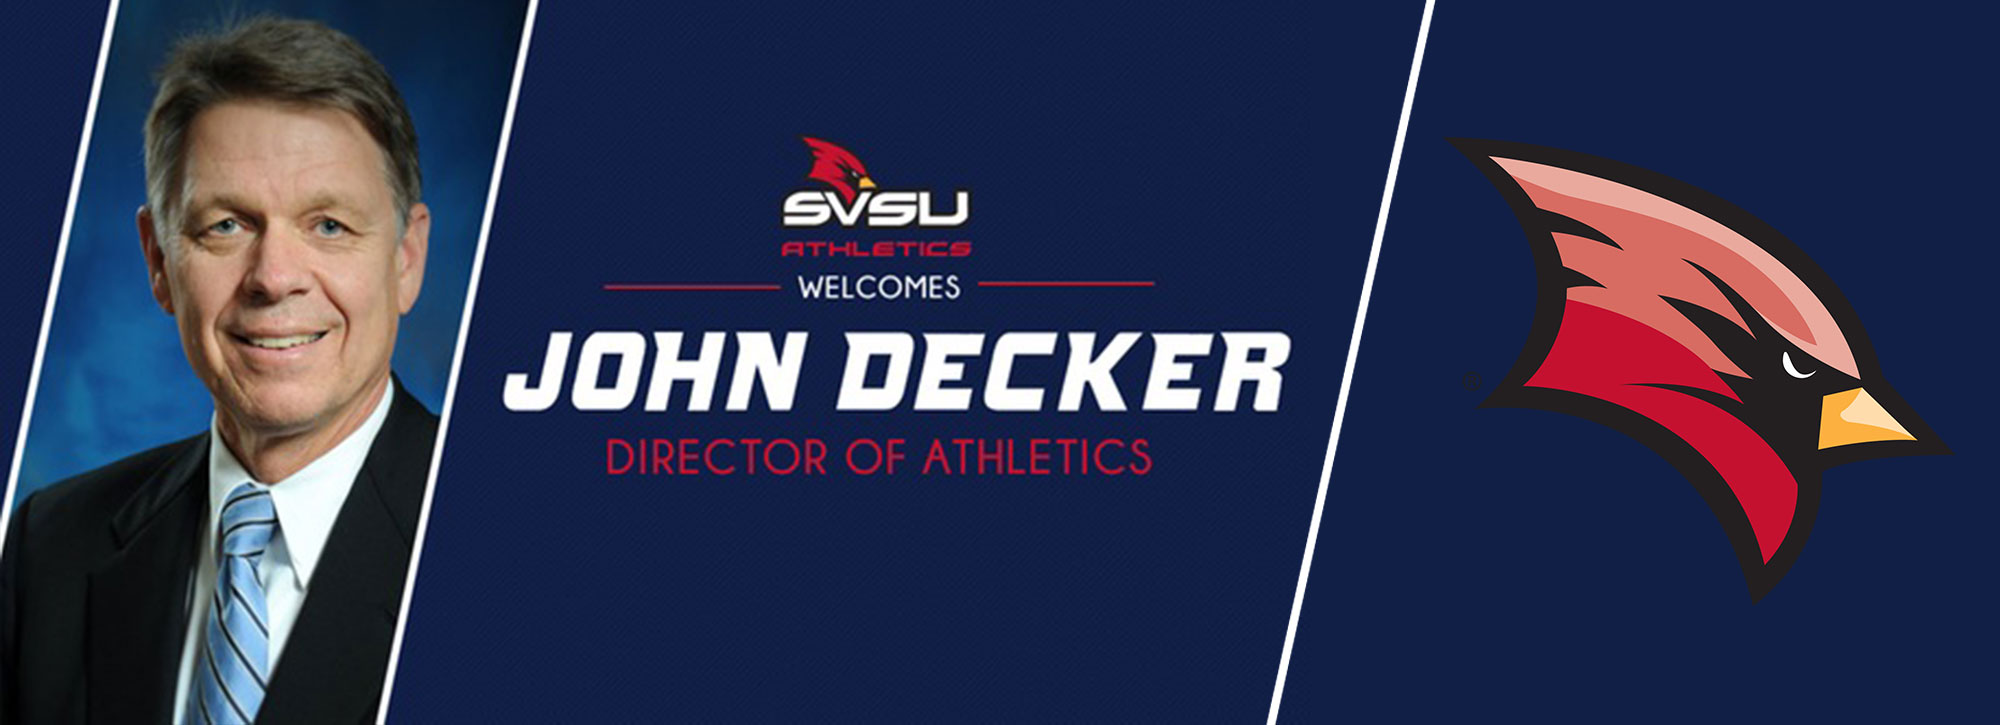 SVSU Appoints John Decker as Director of Athletics